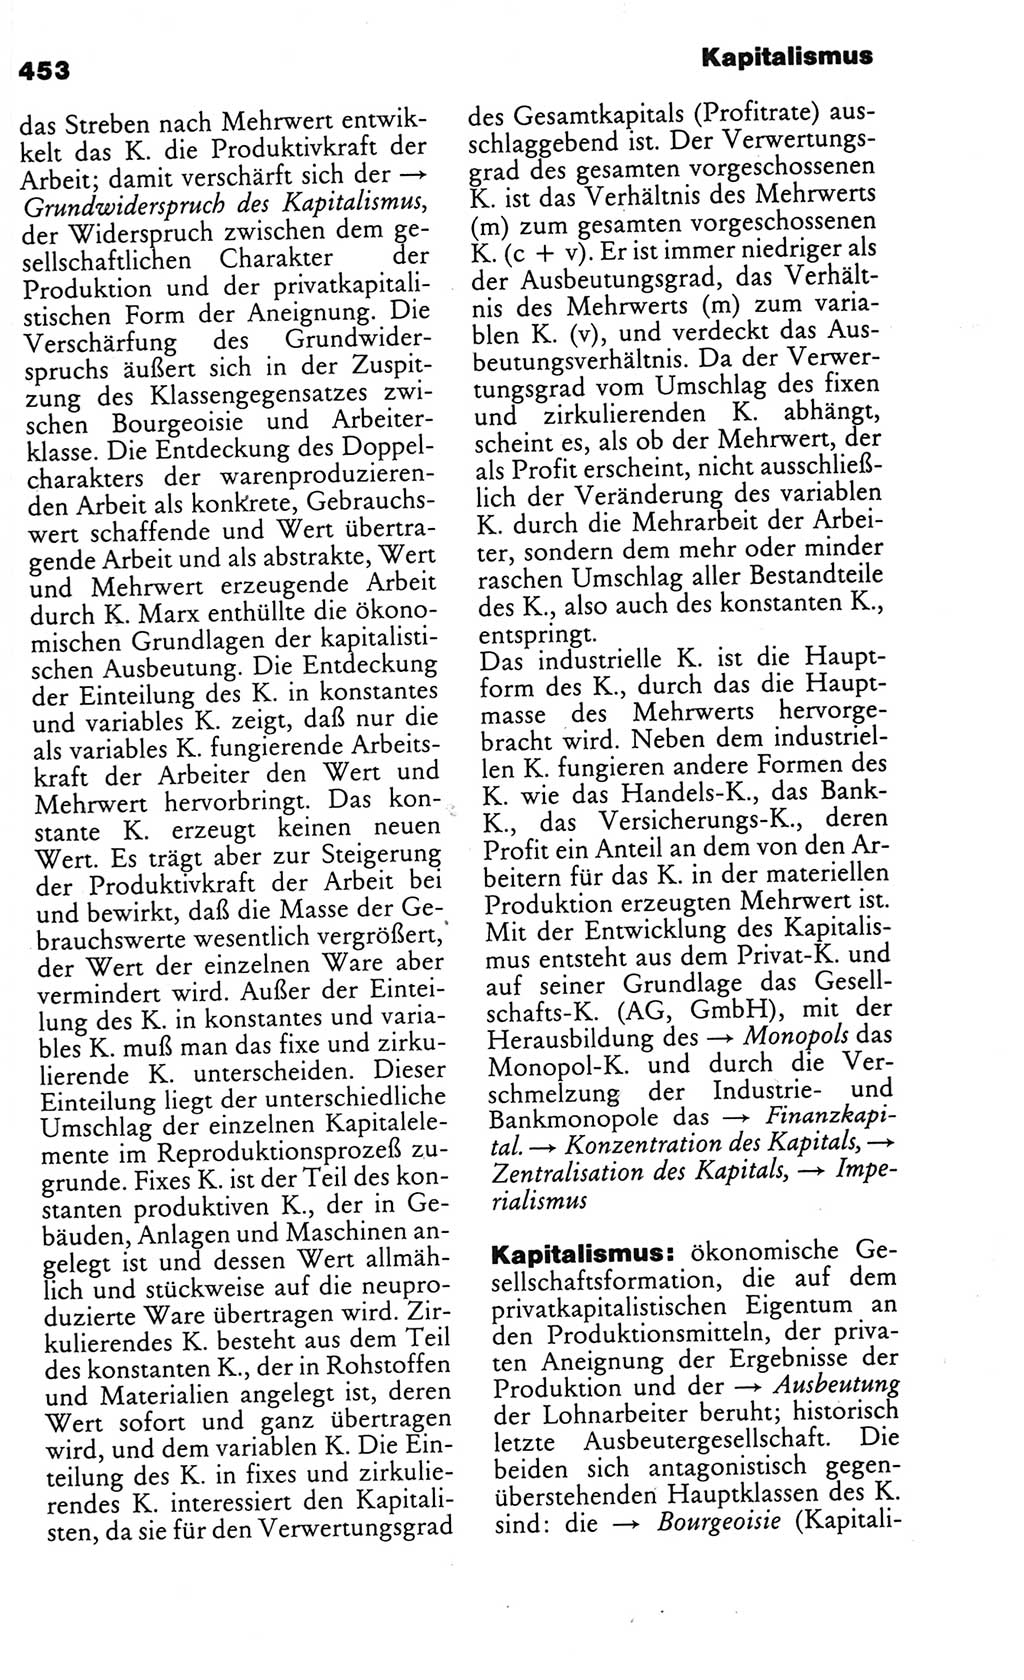 Kleines politisches Wörterbuch [Deutsche Demokratische Republik (DDR)] 1986, Seite 453 (Kl. pol. Wb. DDR 1986, S. 453)